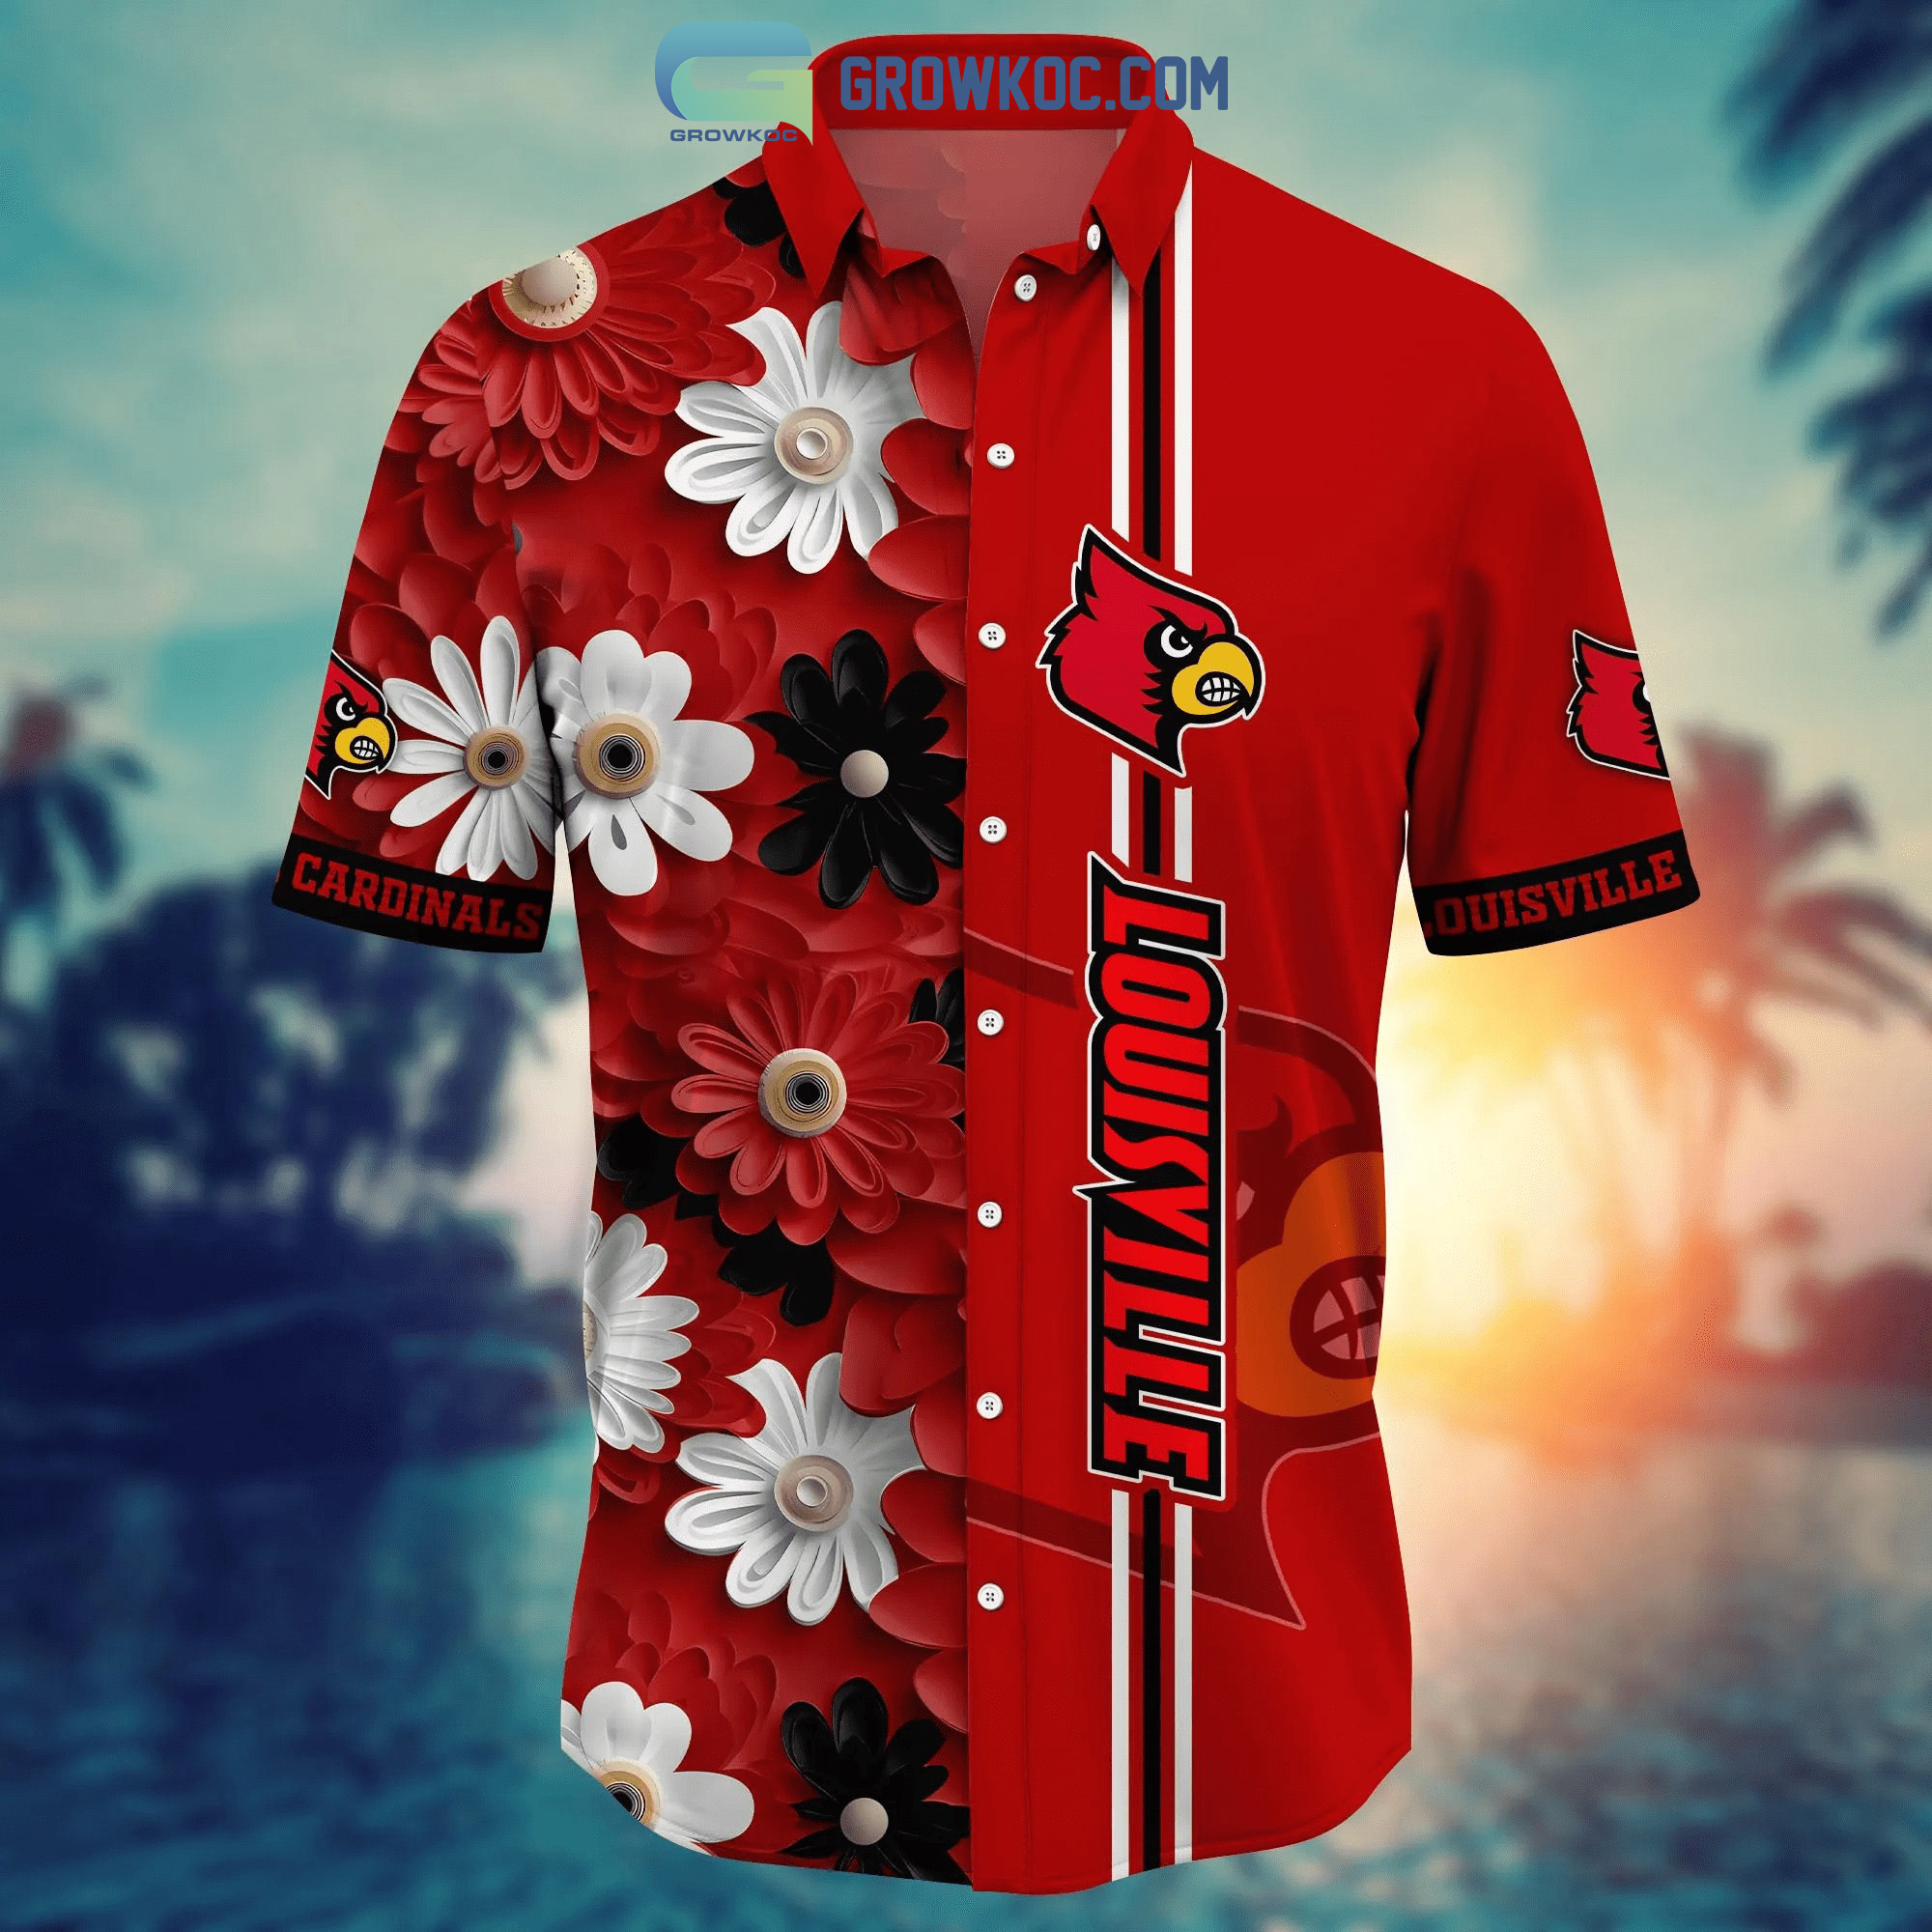 St. Louis Cardinals MLB Flower Hawaiian Shirt For Men Women Great